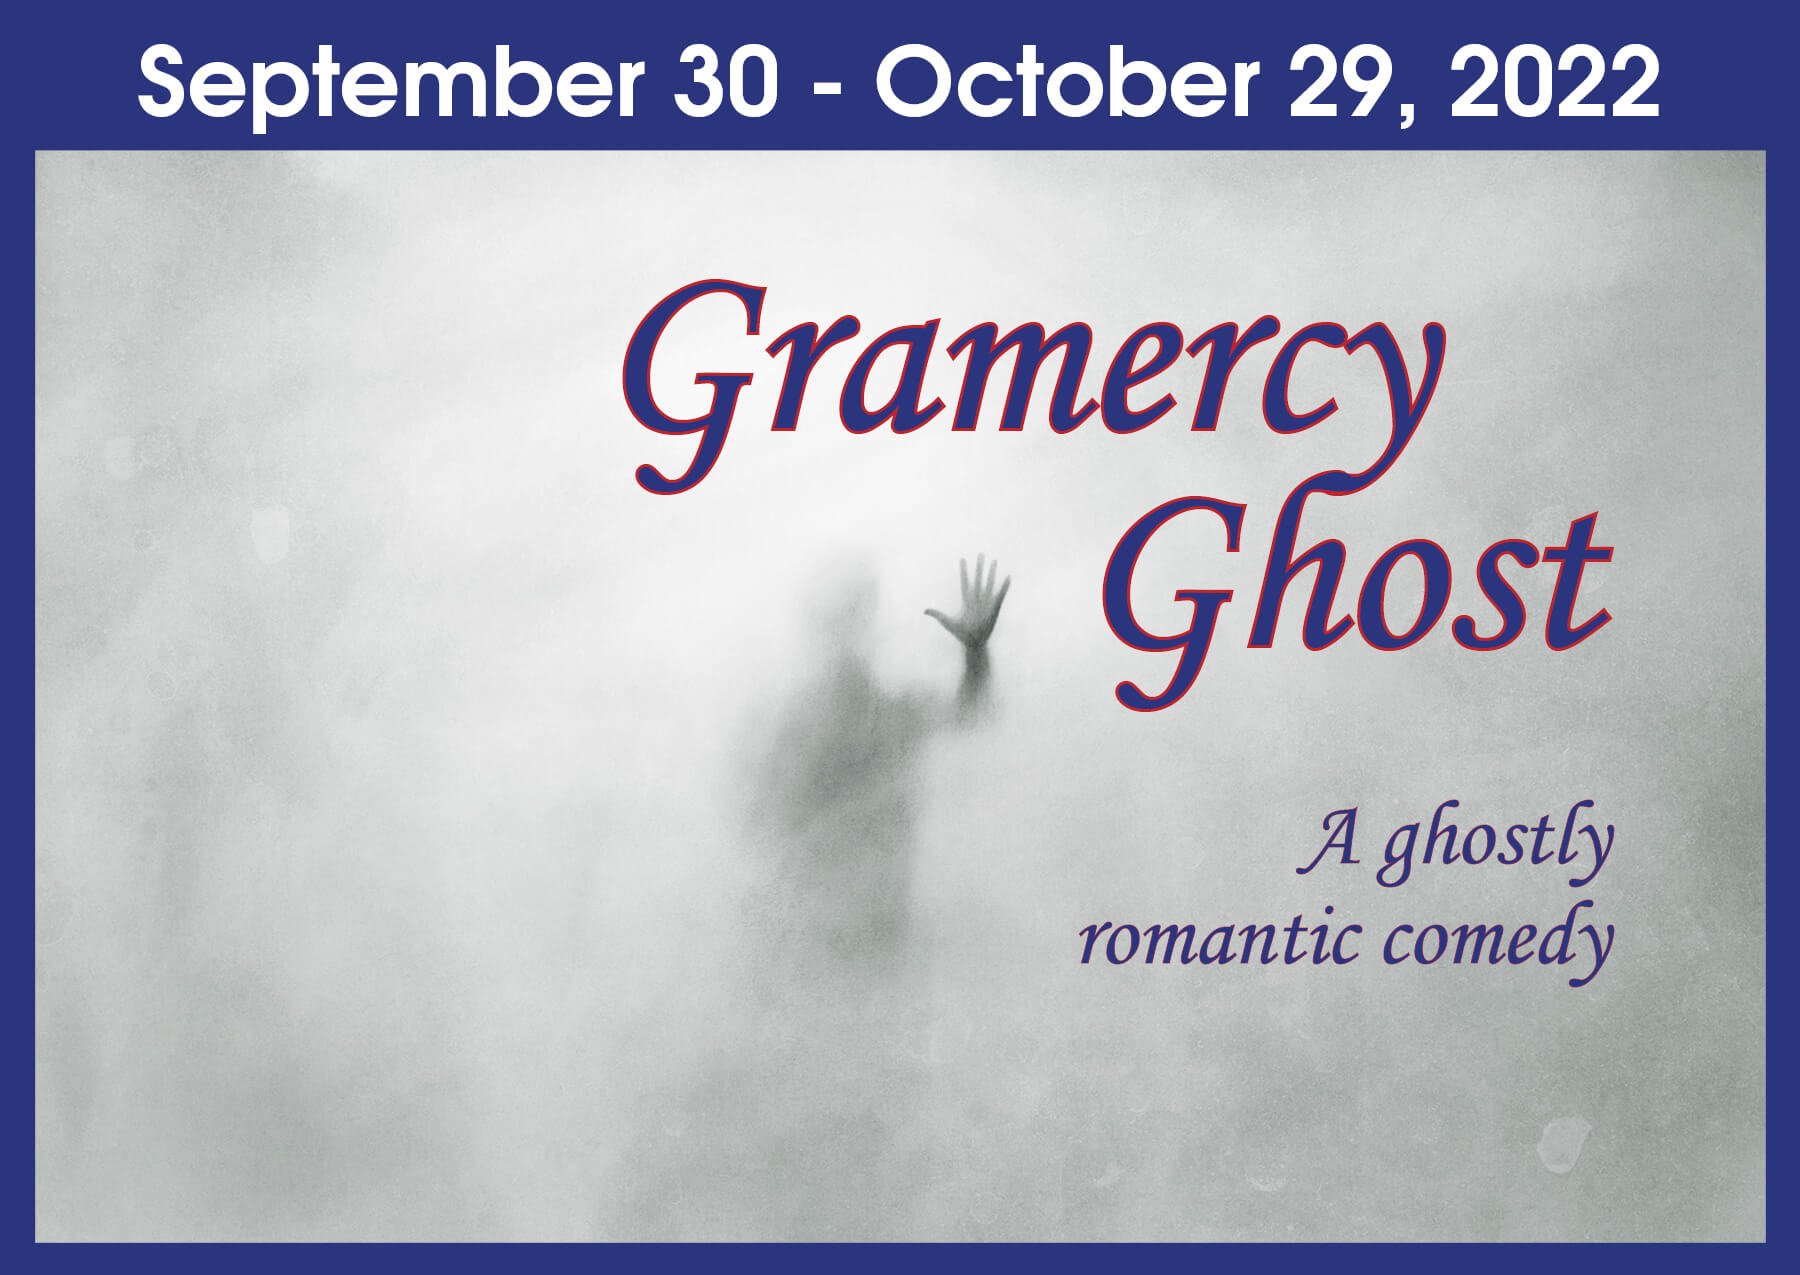 Gramercy Ghost